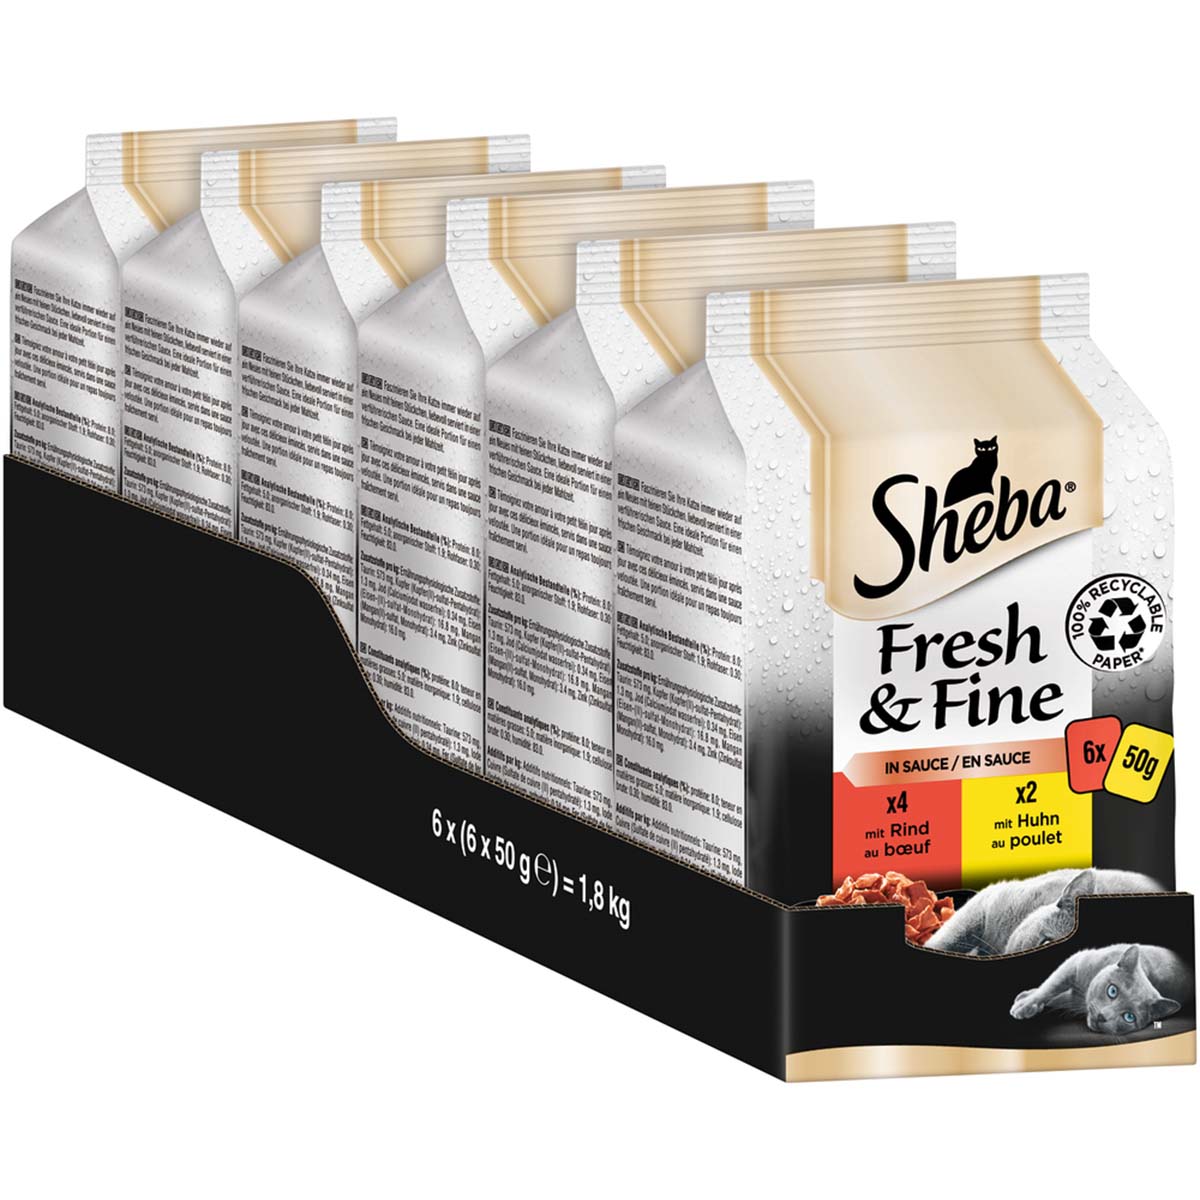 Sheba Fresh & Fine in Sauce mit Rind & Huhn 36x50g von Sheba